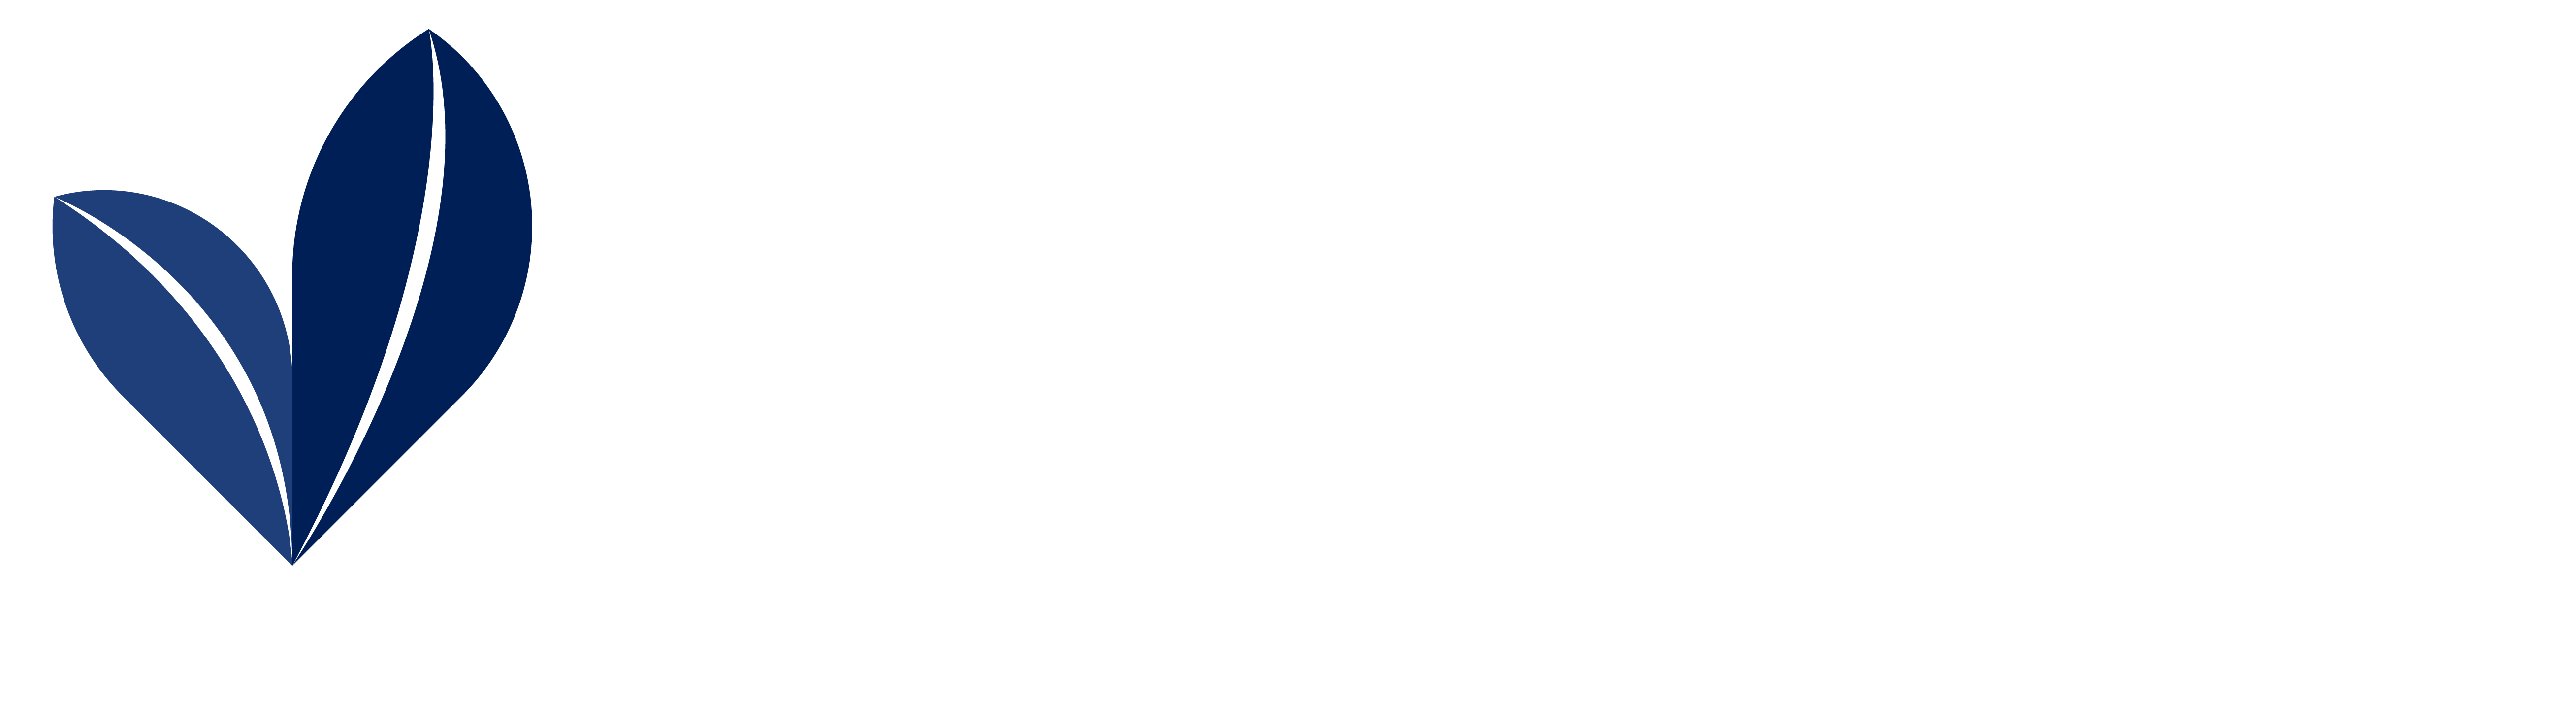 Uganda | Yunus Social Business